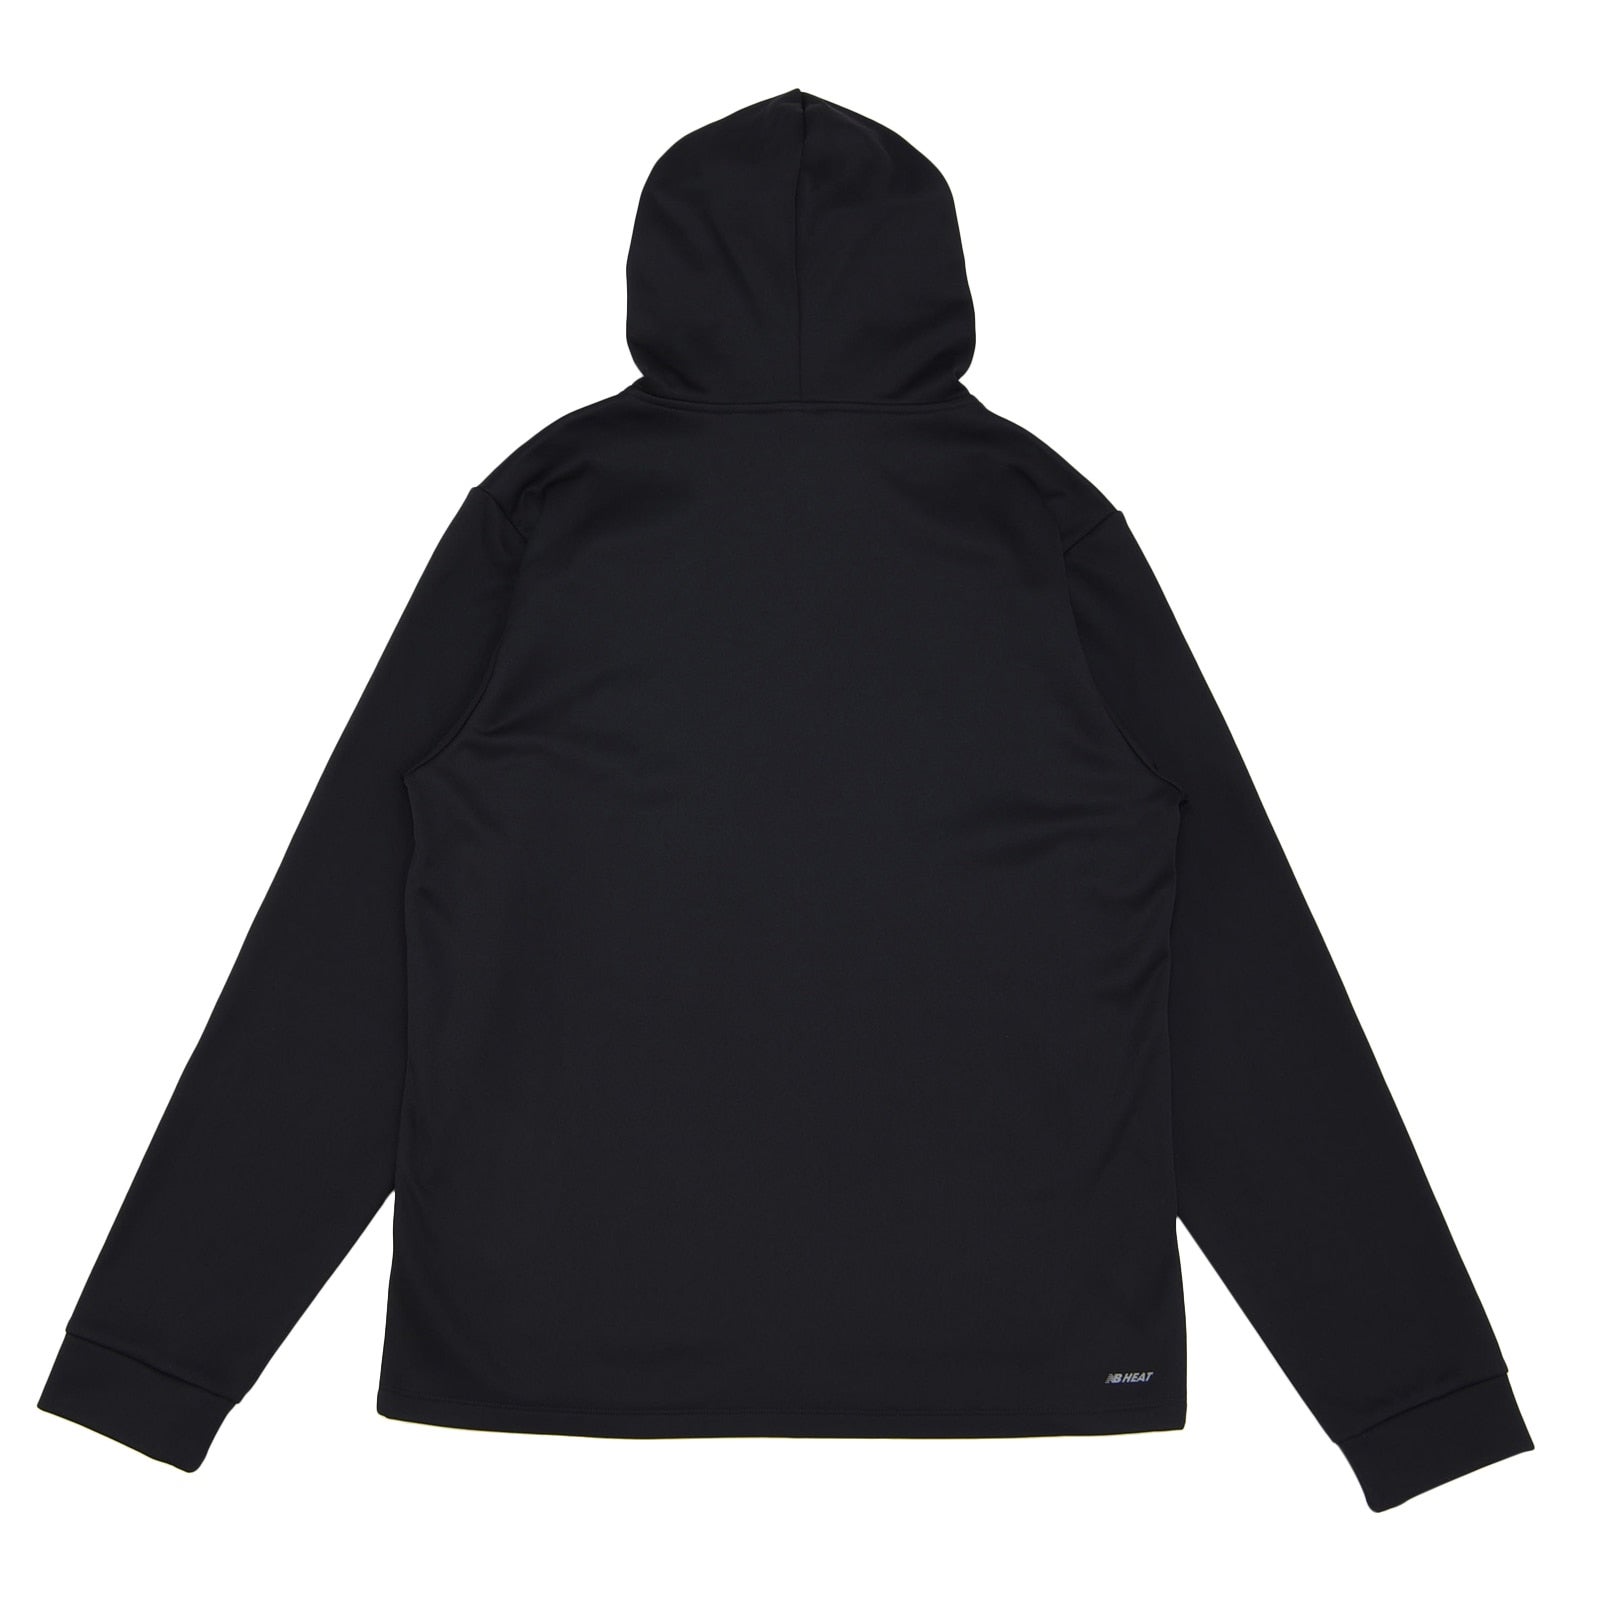 Tenacity fleece full zip hoodie jacket